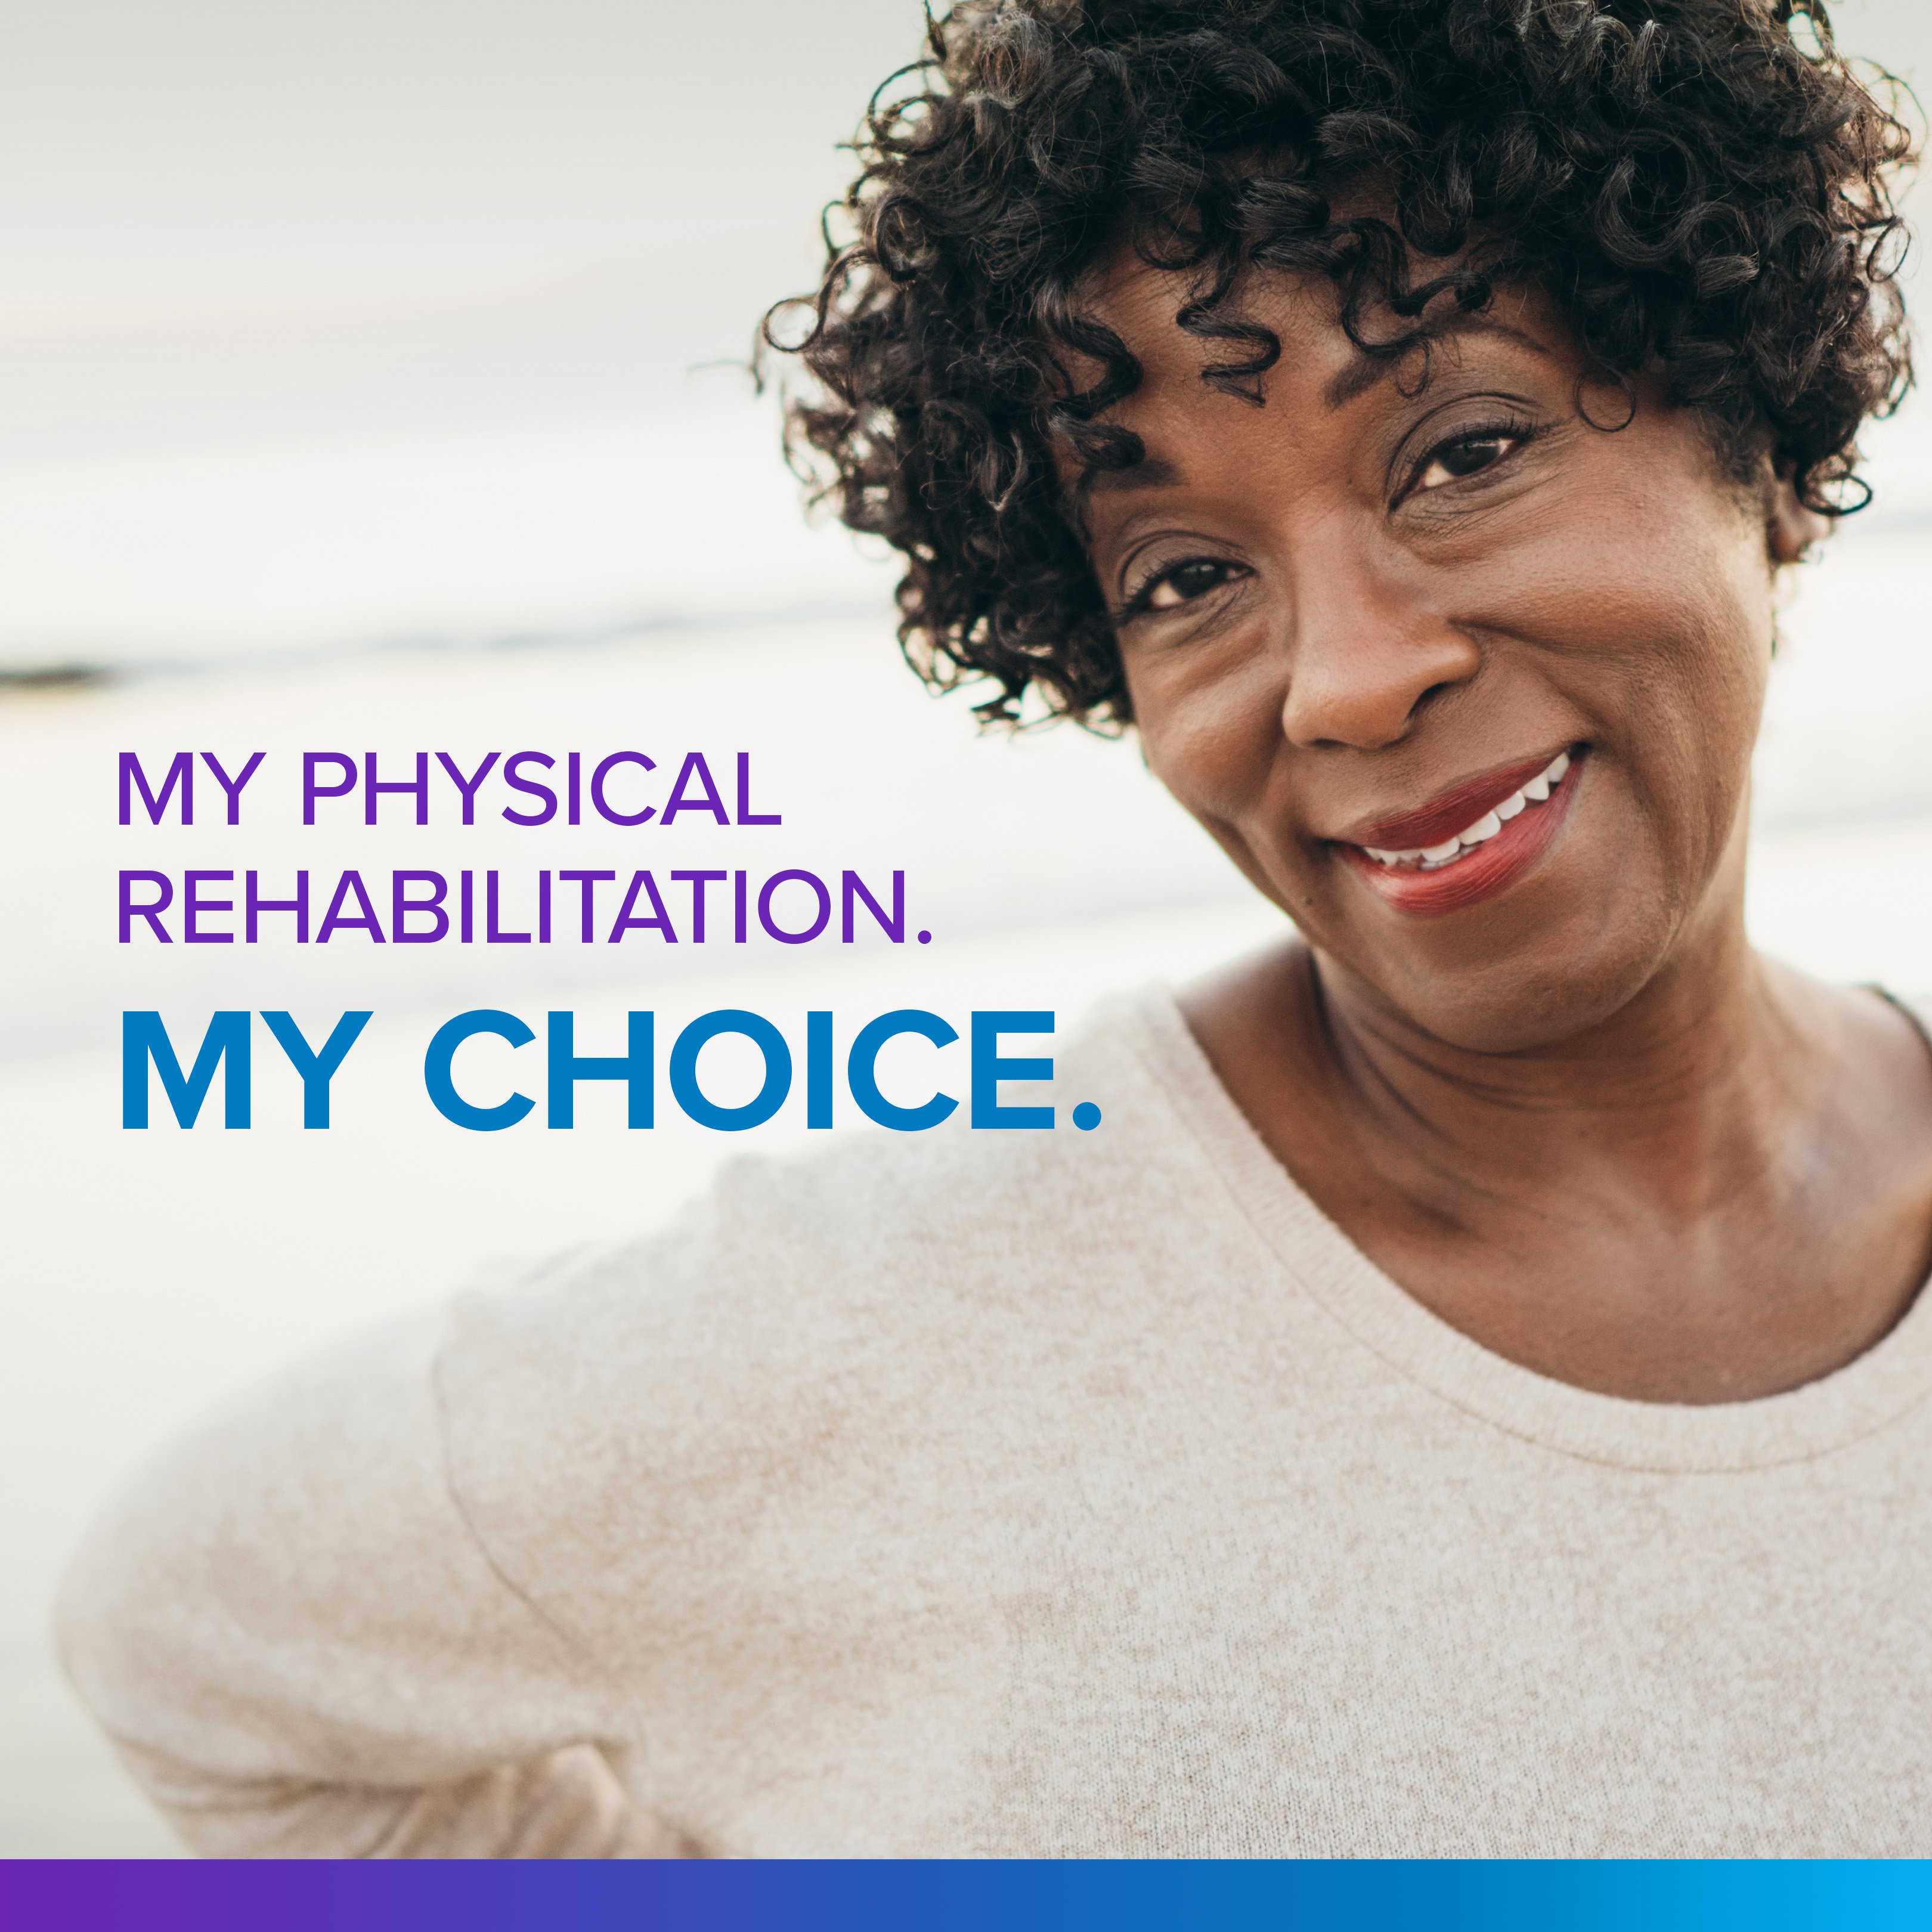 My physical rehabilitation. My choice.